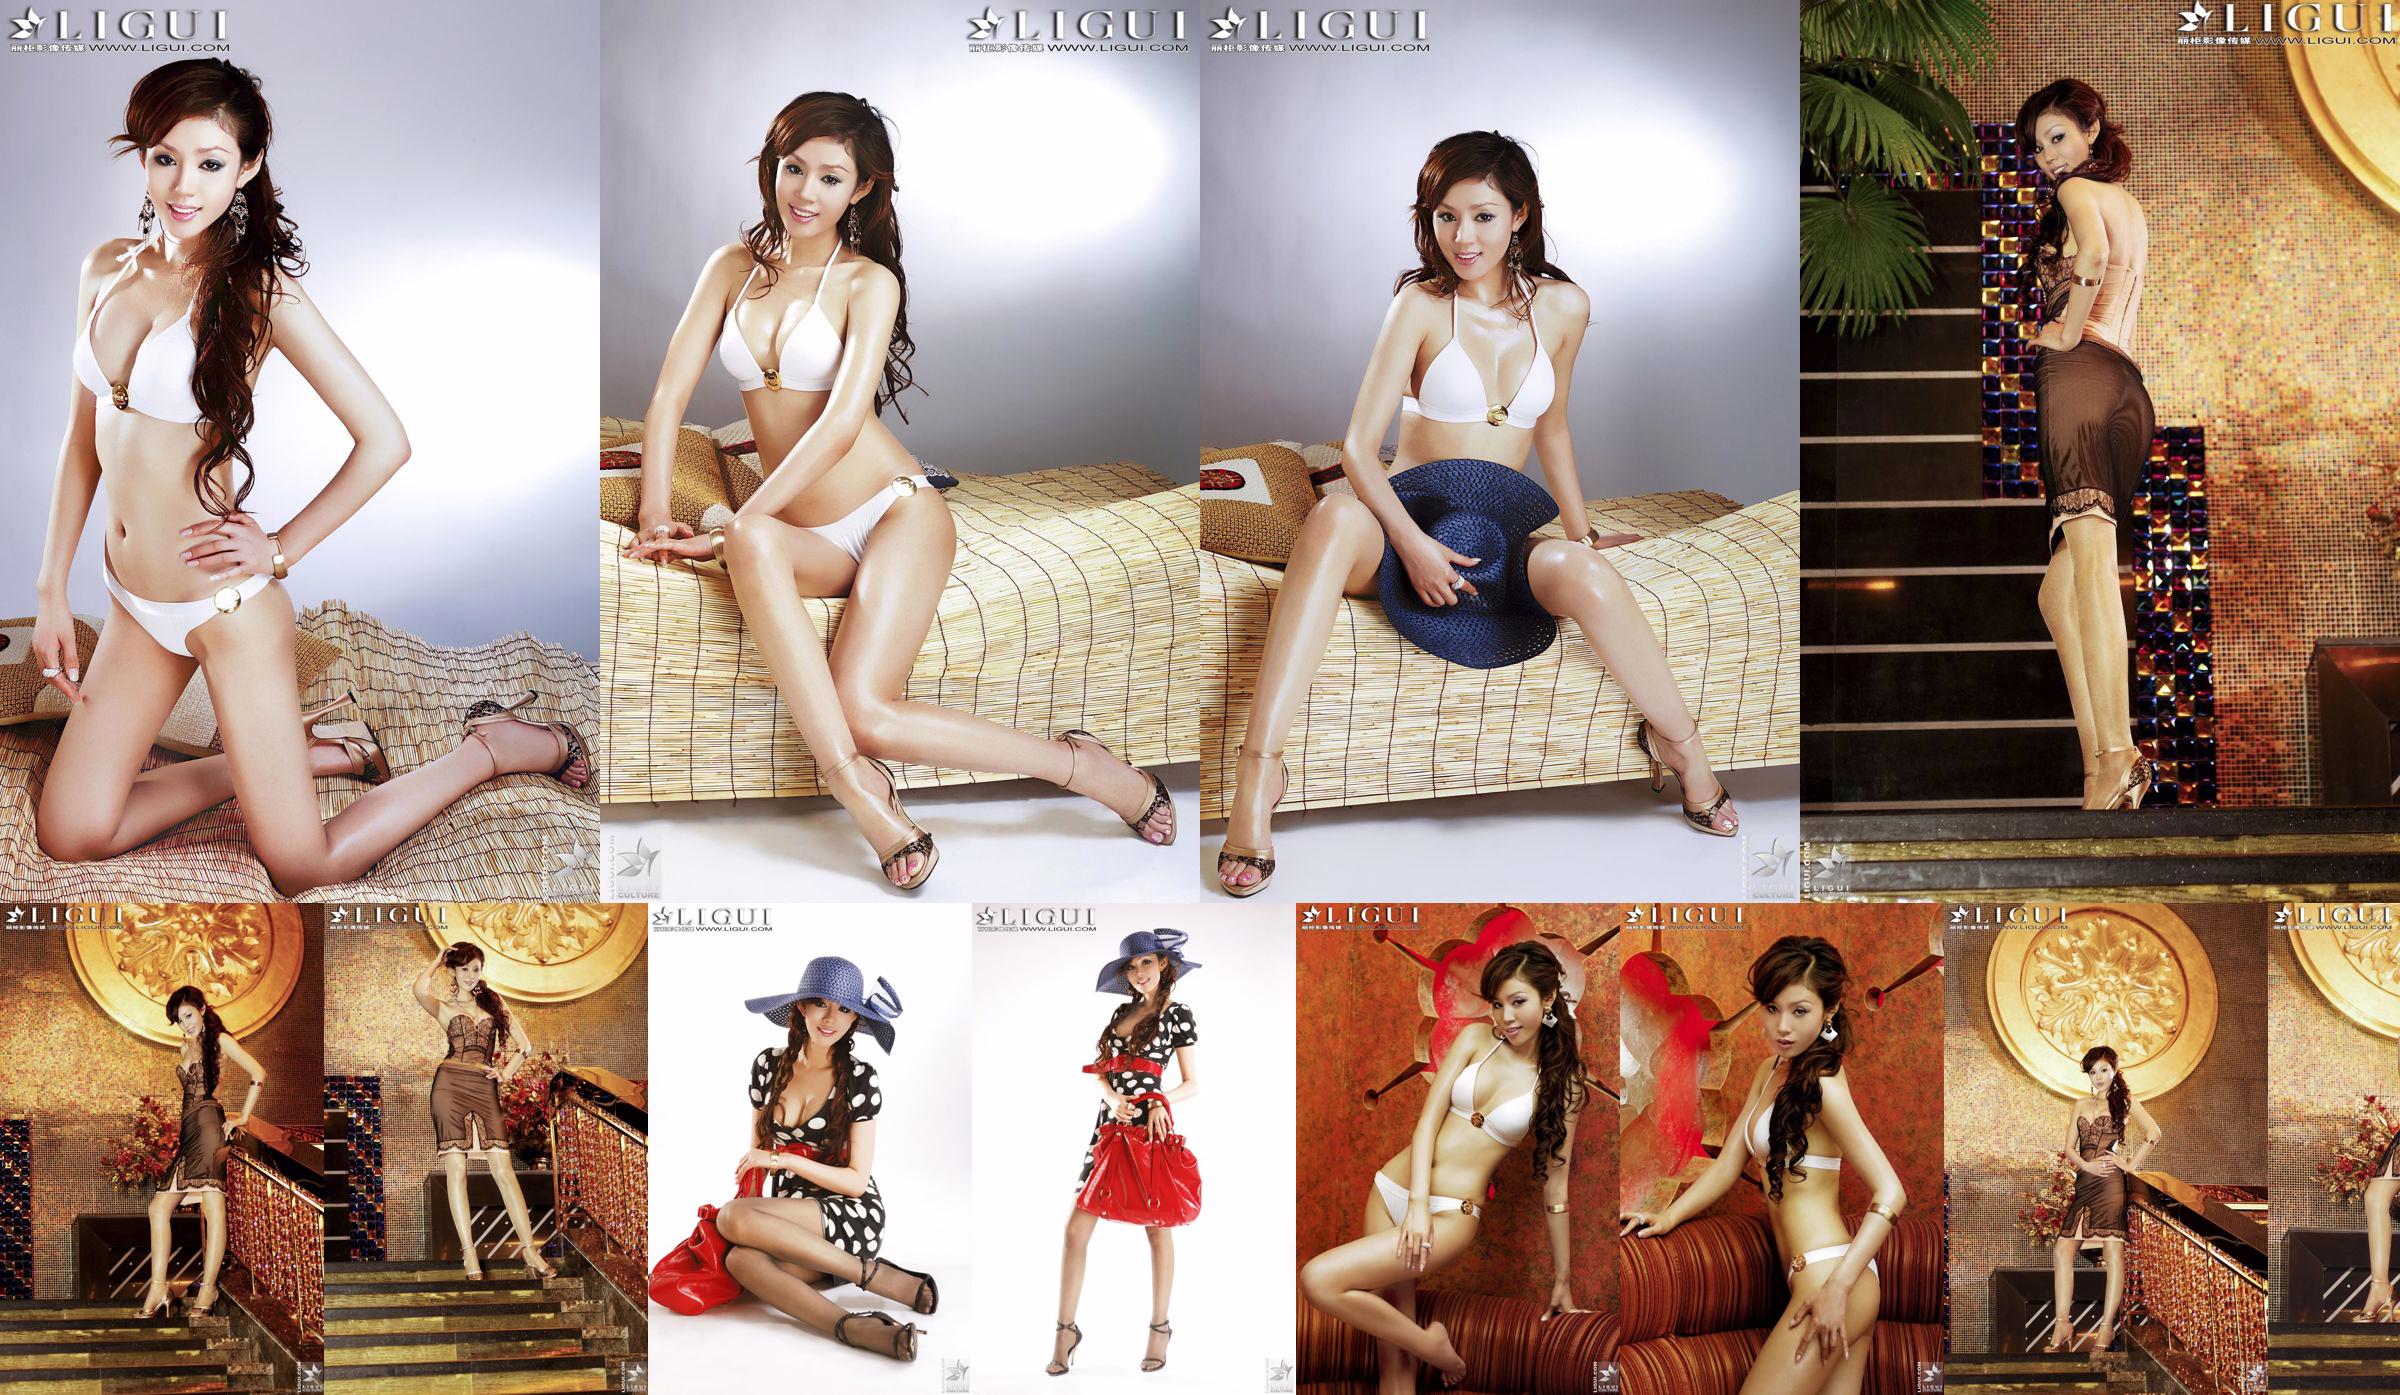 [丽 柜 LiGui] Model Yao Jinjins "Bikini + Kleid" Schöne Beine und seidige Füße Foto Bild No.e24130 Seite 10